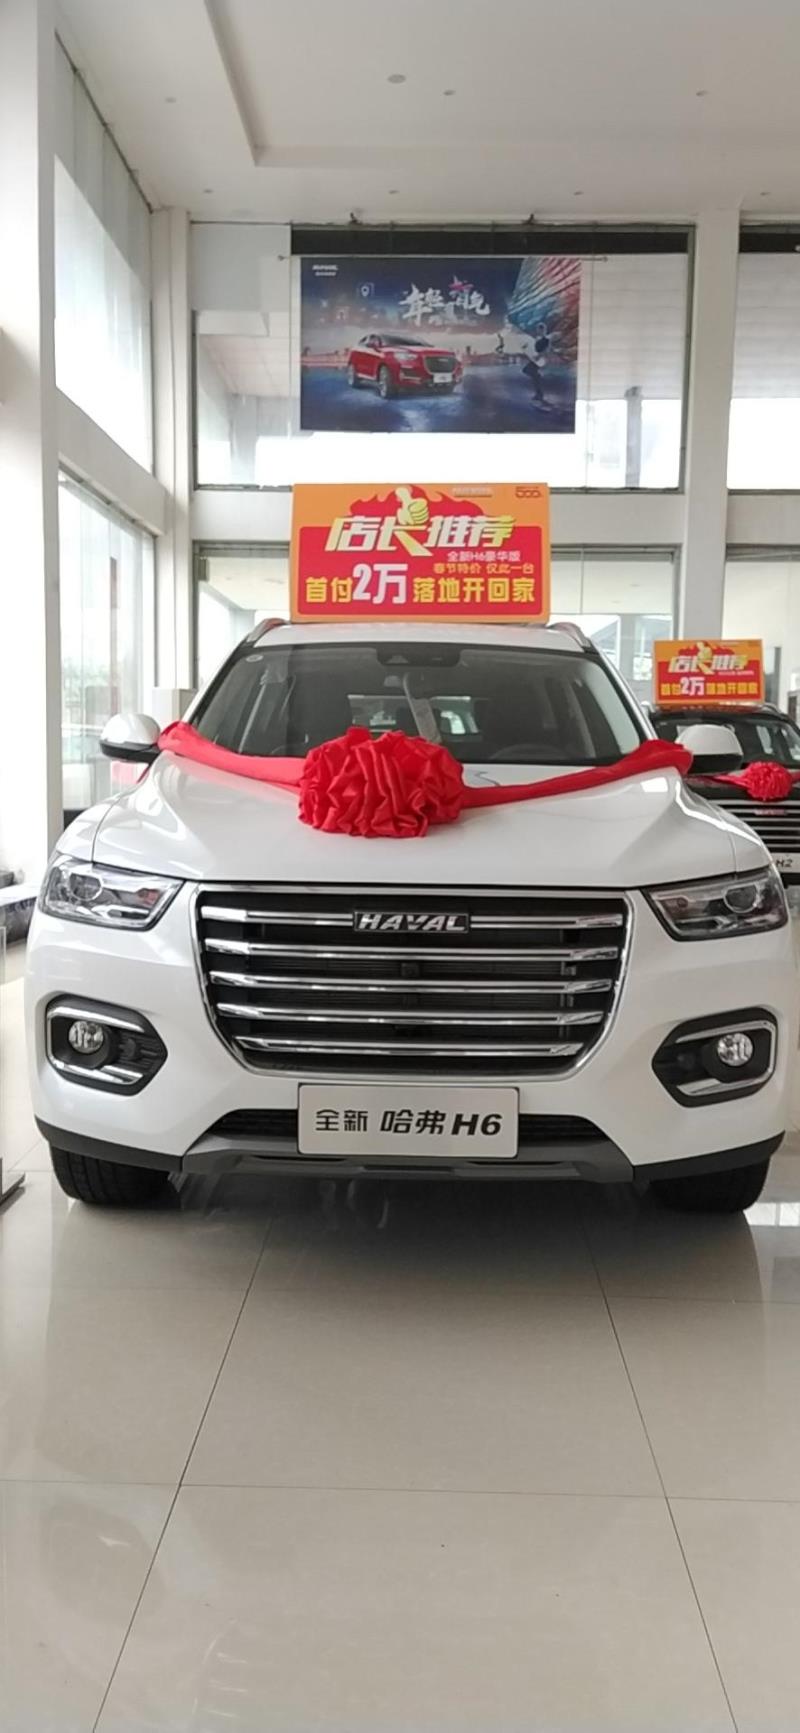 弗h6，;假如在江西买了新车，车子能在另一个省，例如:广东省，任何一家4s店能免费做首保吗